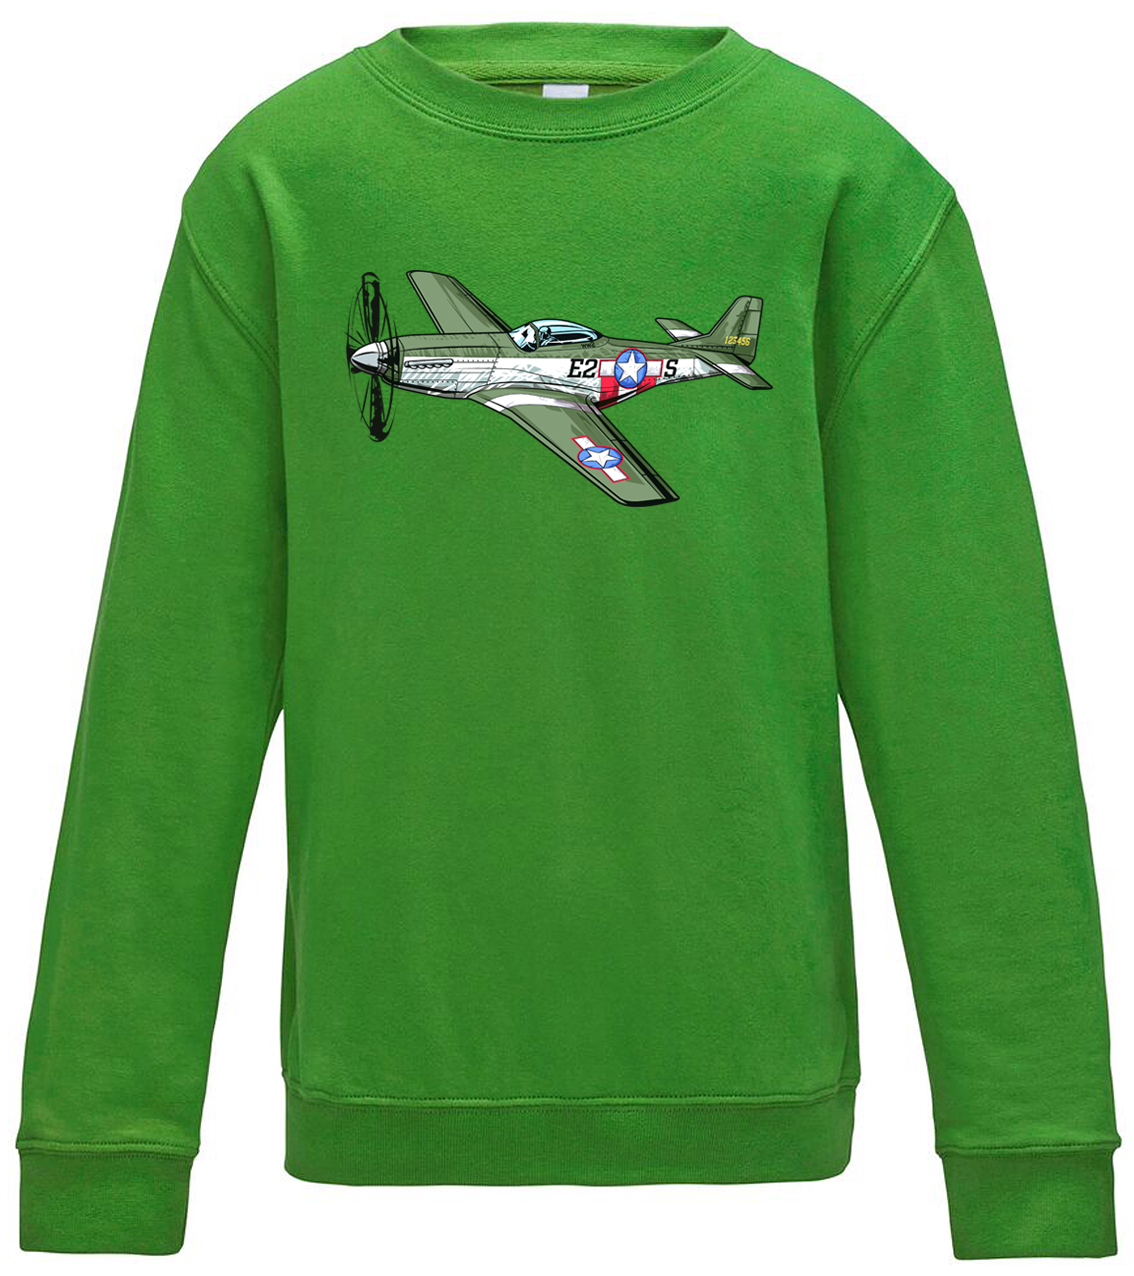 Dětská mikina s letadlem - P-51 Mustang Velikost: 7/8 (122/128), Barva: Zelená